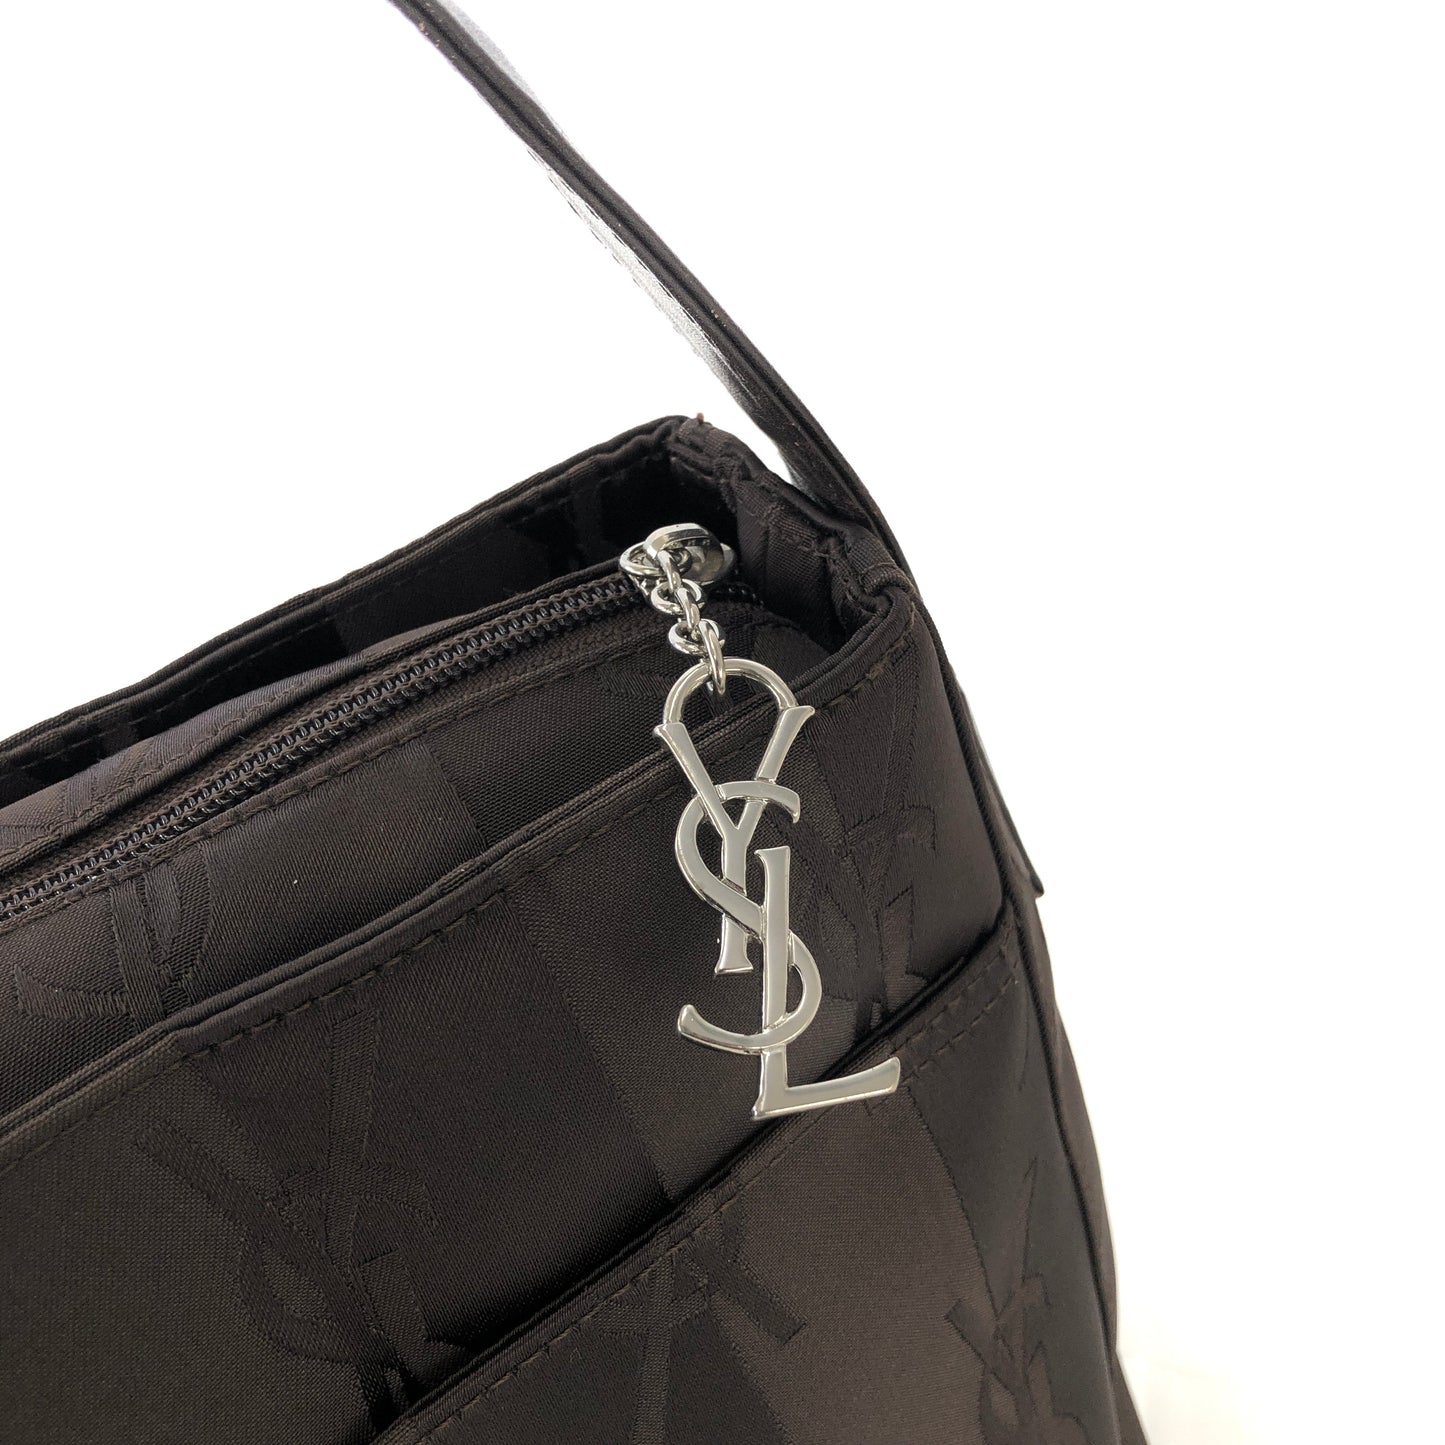 Yves Saint Laurent YSL logo Stripe Nylon Shoulder bag Black Vintage Old vrpv4g